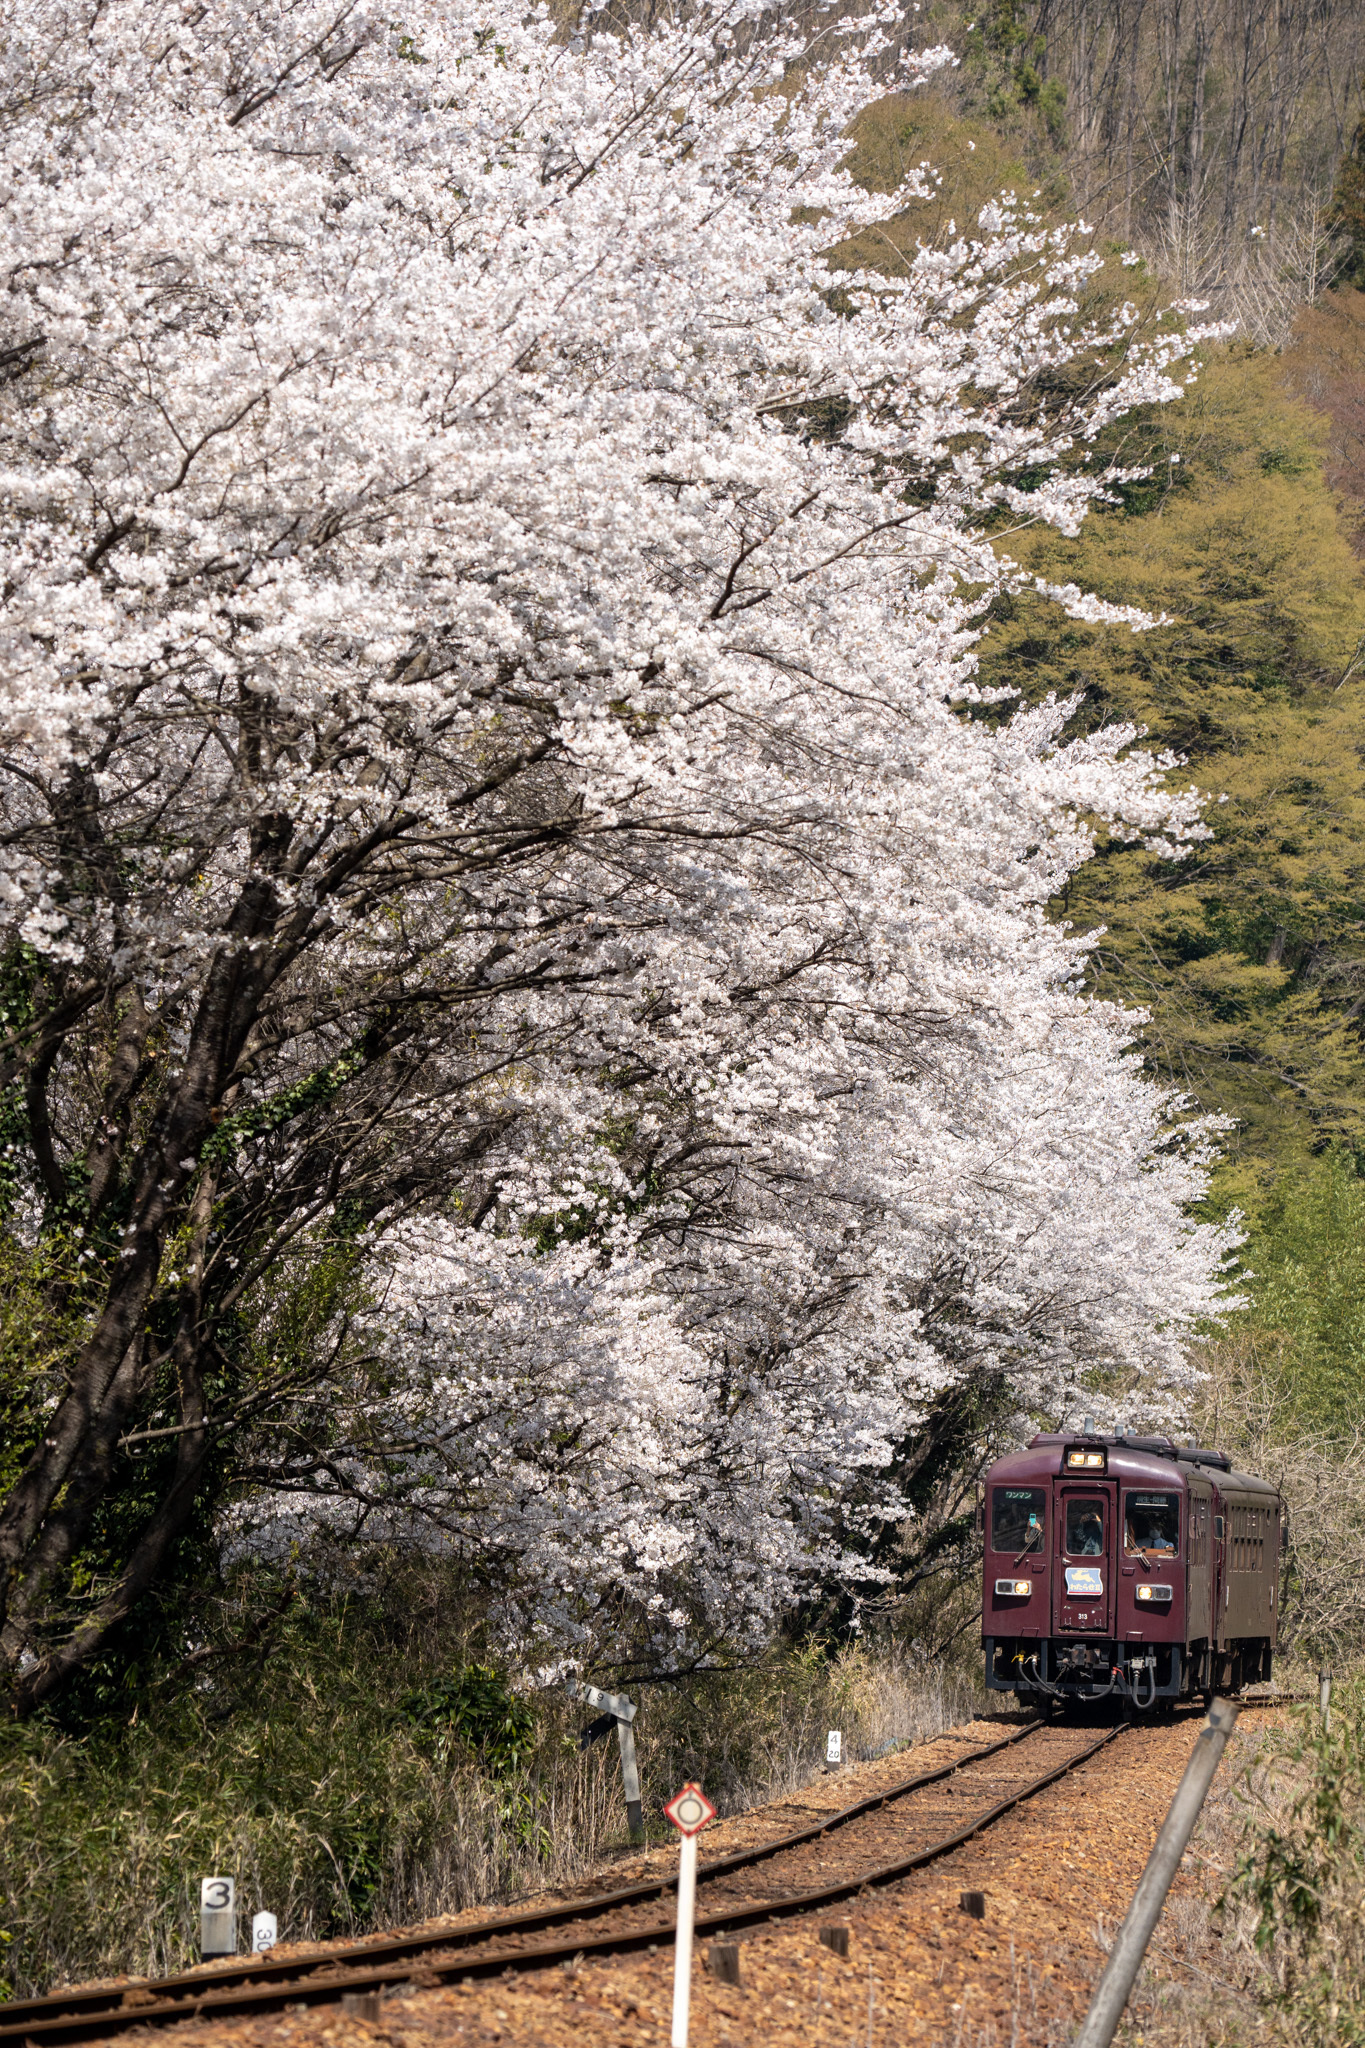 20230401_中野駅付近の満開の桜と桐生行き718D